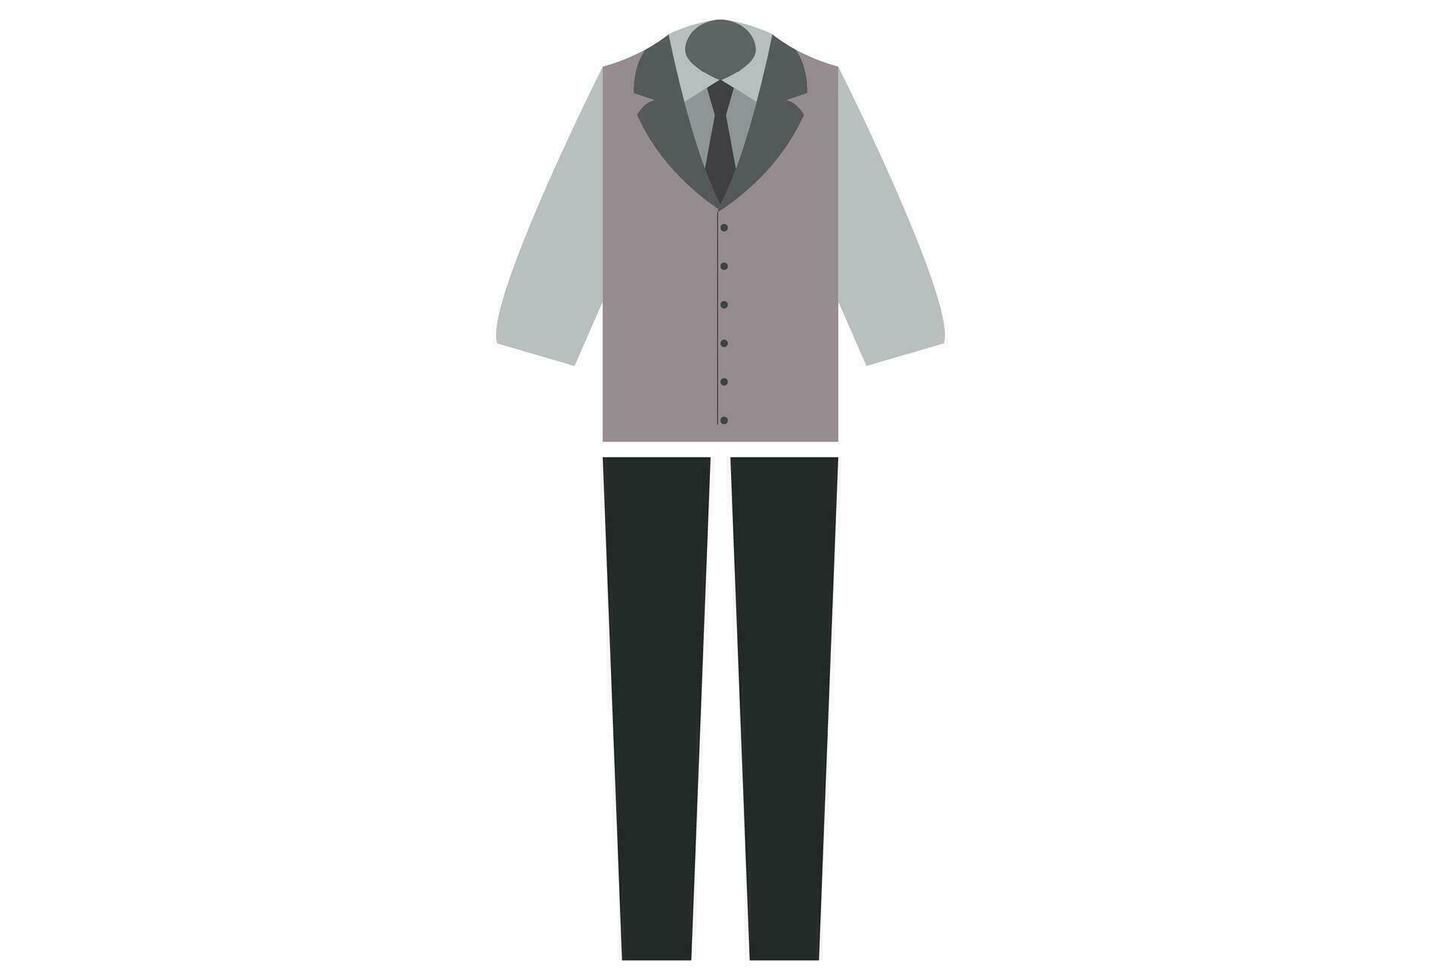 Barmann Uniform, typischerweise besteht von ein Halsband Shirt, Weste oder Jacke, und Kleid Hose oder lockert.die Uniform ist entworfen zu erstellen ein Fachmann und poliert Aussehen zum das Barmann, vektor